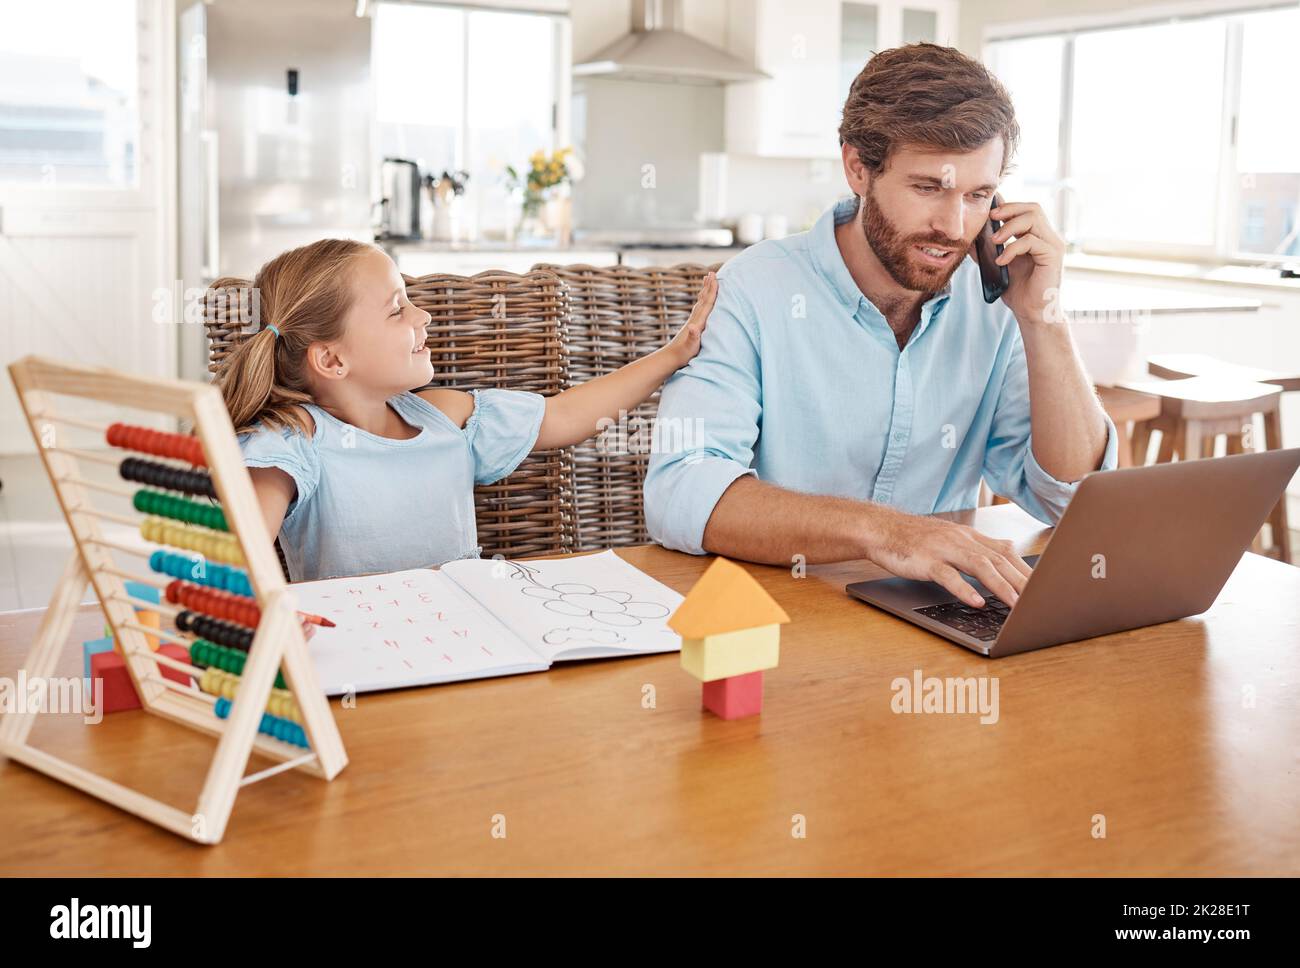 Kinderlernen, Heimarbeit und Arbeitsgespräch eines Vaters auf einem Computer, der mit digitaler Planung beschäftigt ist. Geschäftsmann, der während eines Mädchens redet und Technologie verwendet Stockfoto